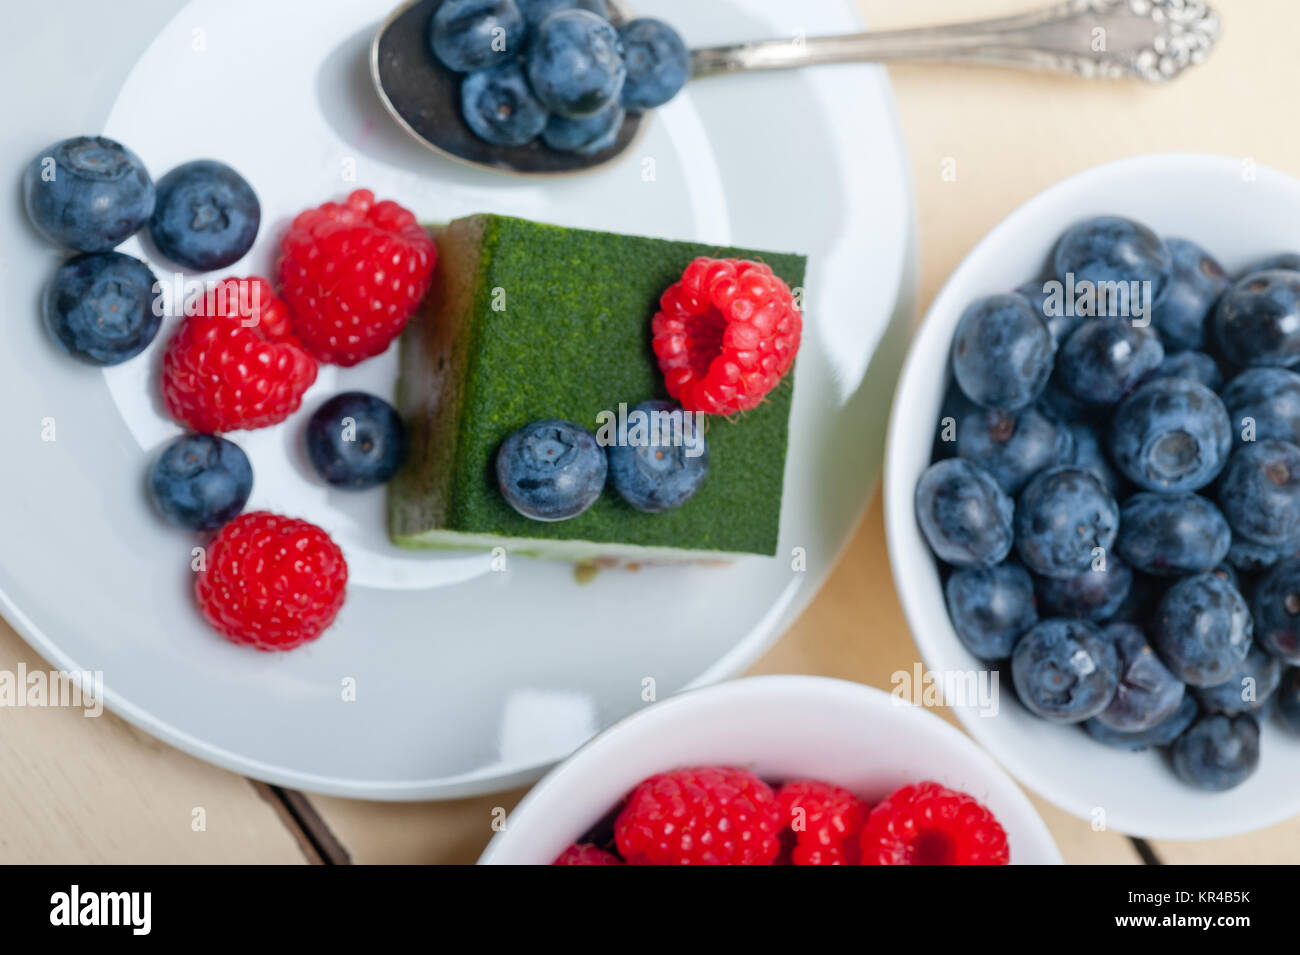 Grüner Tee Matcha Mousse Torte mit Beeren Stockfotografie - Alamy